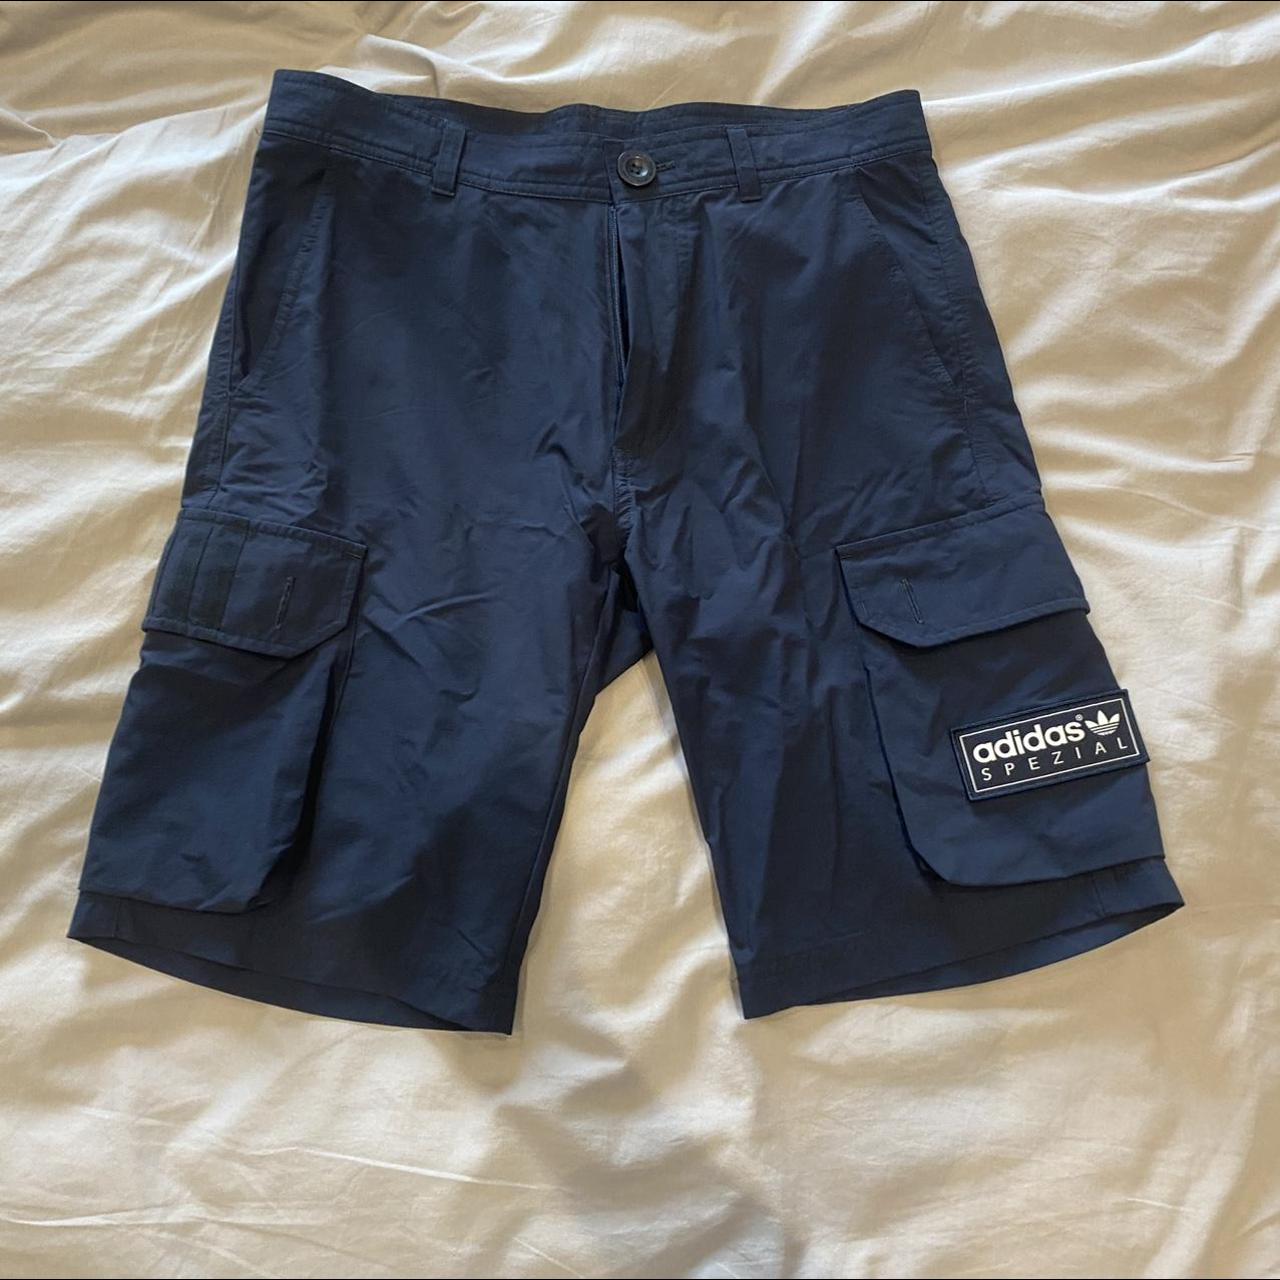 Adidas Aldwych Spezial Cargo Shorts Size: 28 waist... - Depop